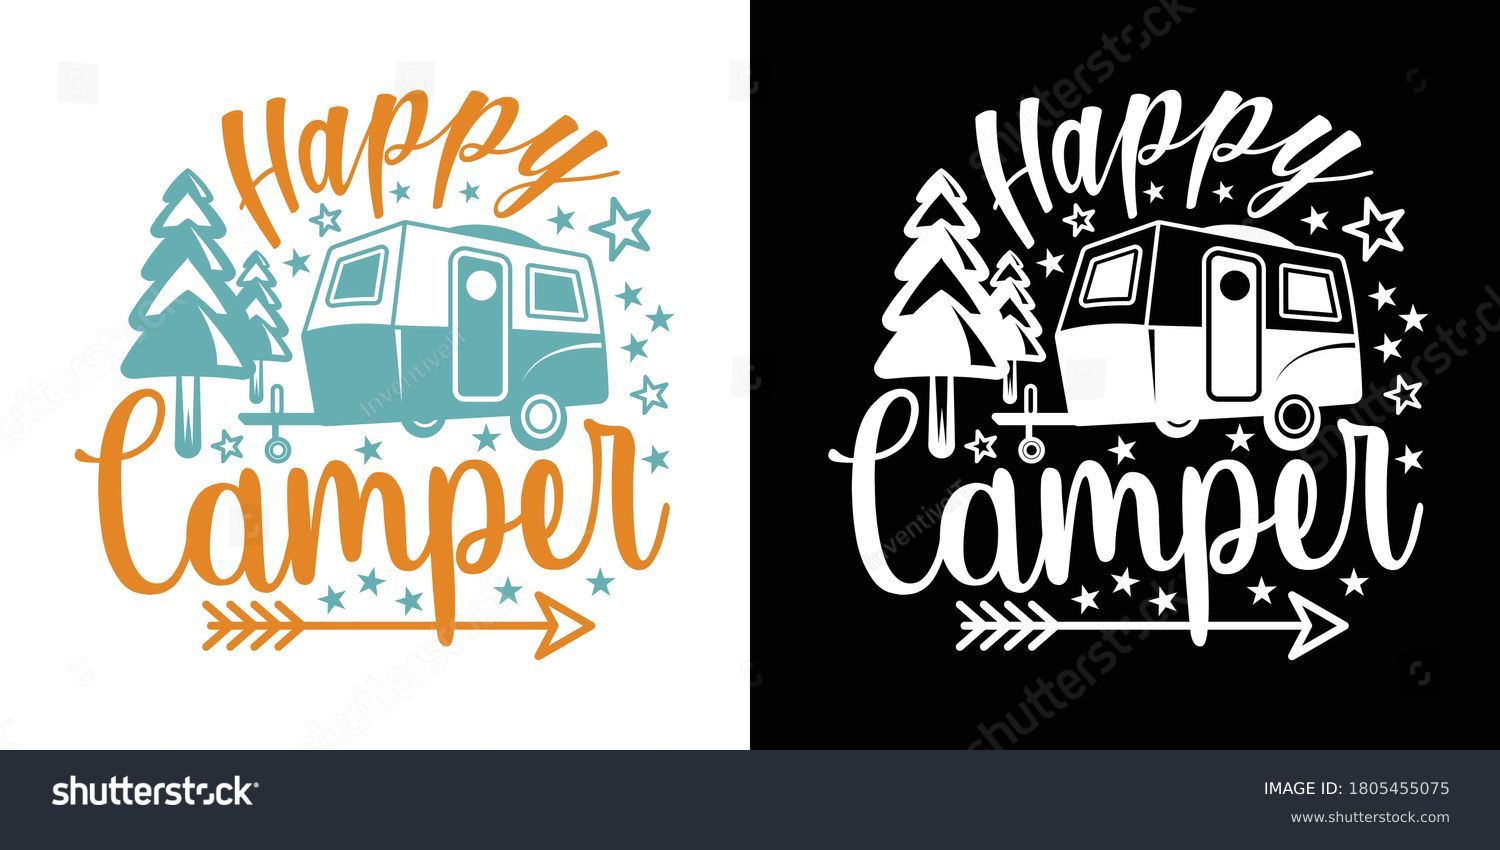 SVG of Happy Camper Printable Vector Illustration svg